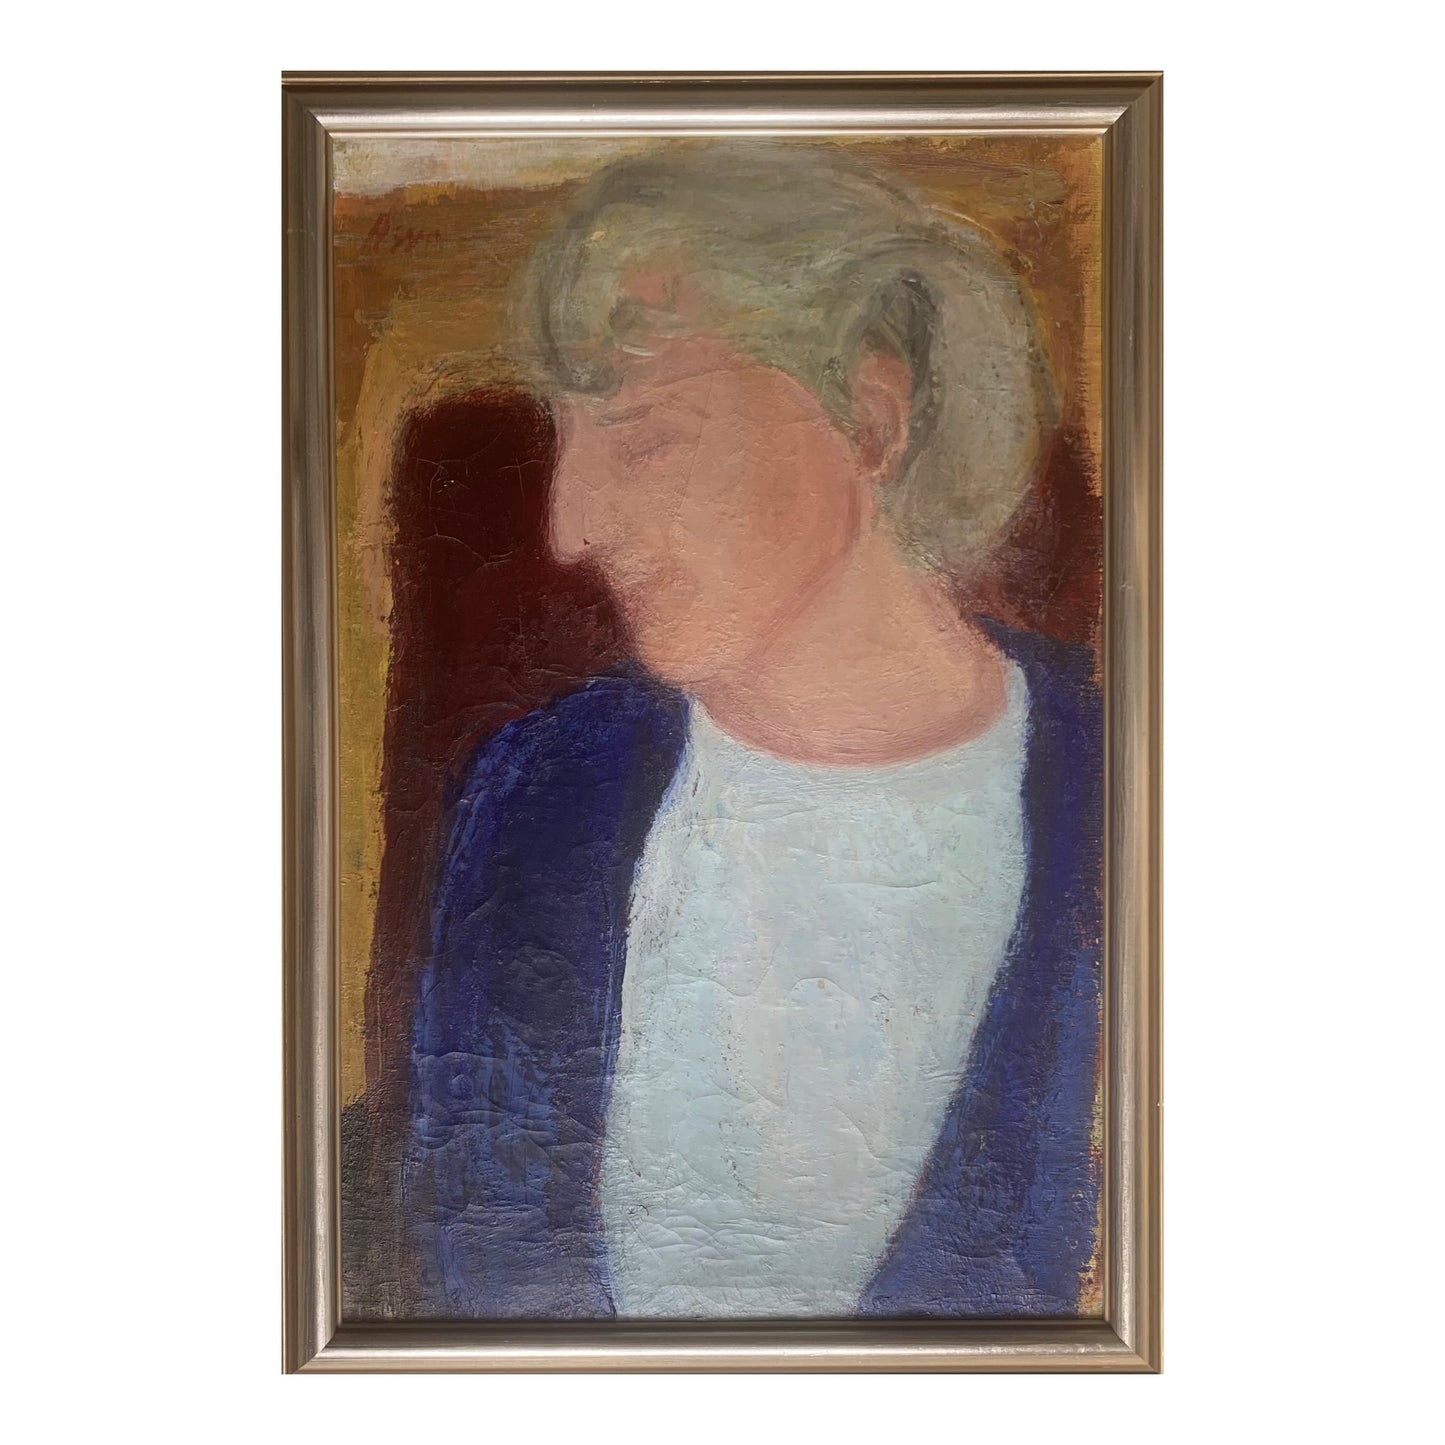 Knud Agger. “Dame i blåt, portræt af kunstnerens hustru”, ca. 1939